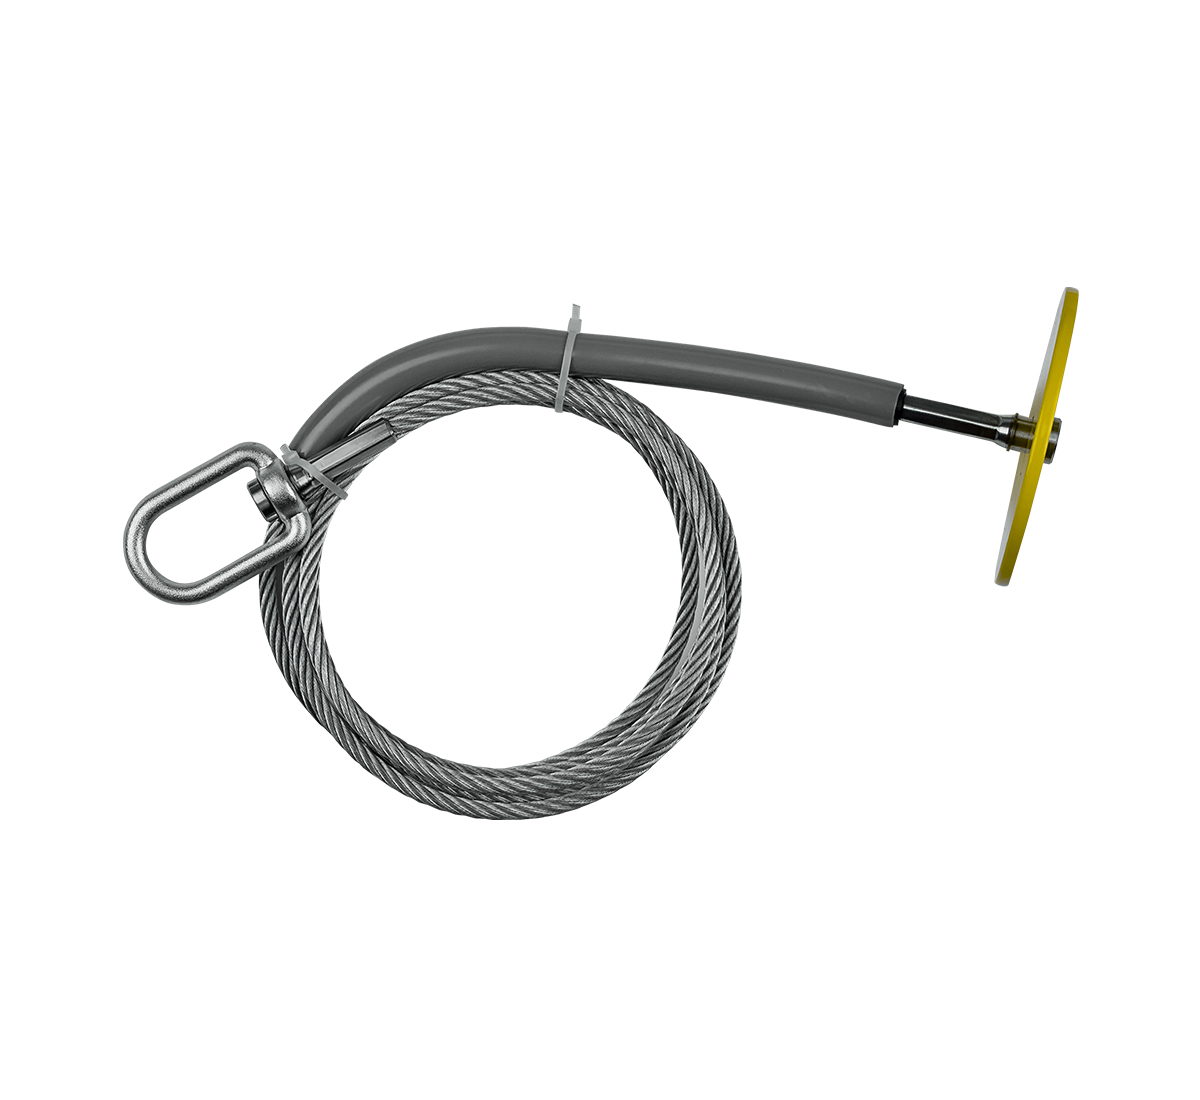 Safewaze 8-1/2' Drop Through Steel Cable Anchor - 310lb Capacity